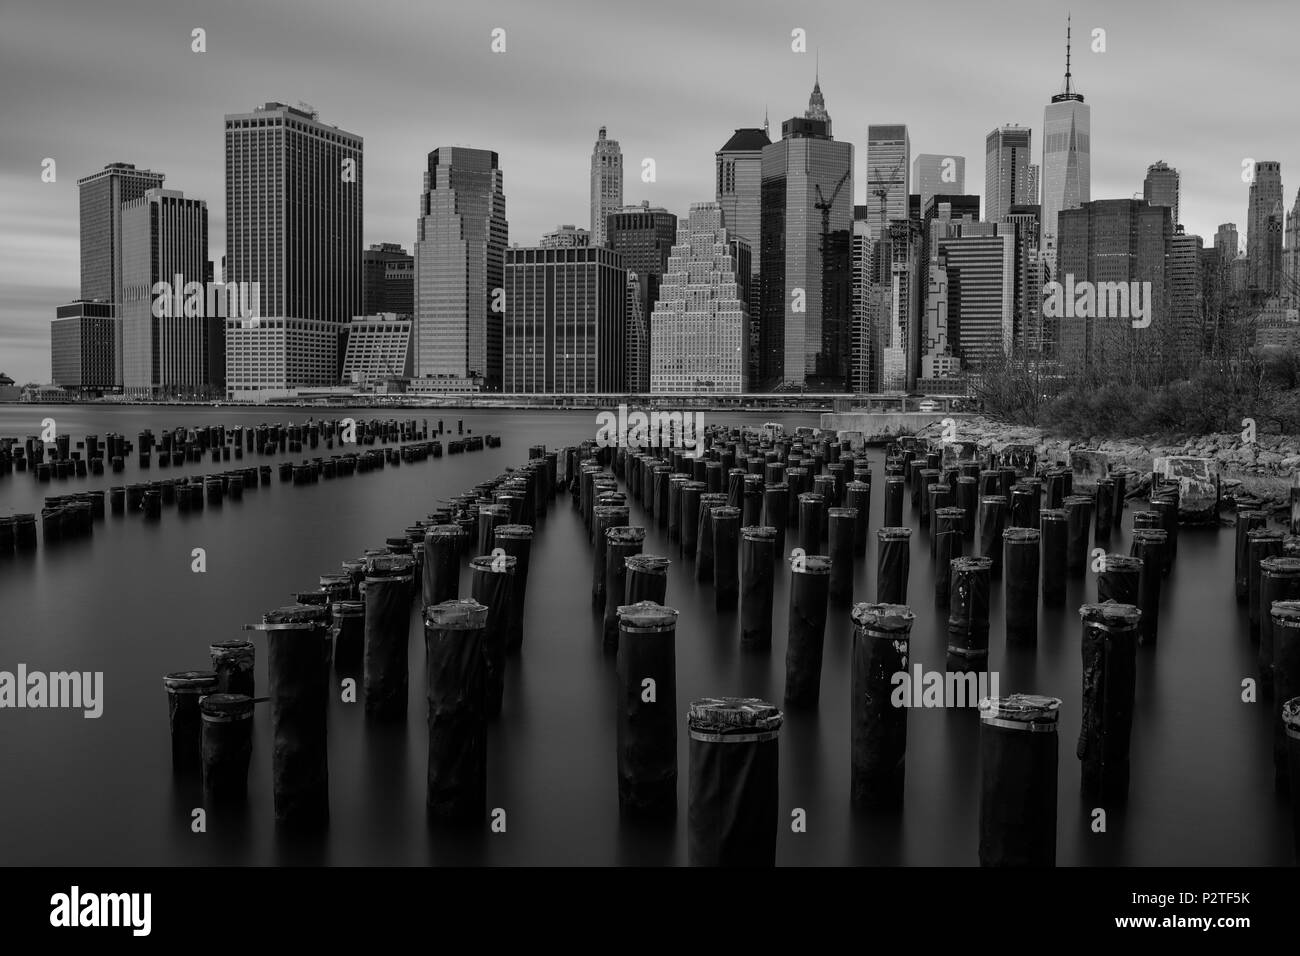 USA, American, New York, Manhattan, vue vers le centre-ville avec pont de Brooklyn Park Banque D'Images